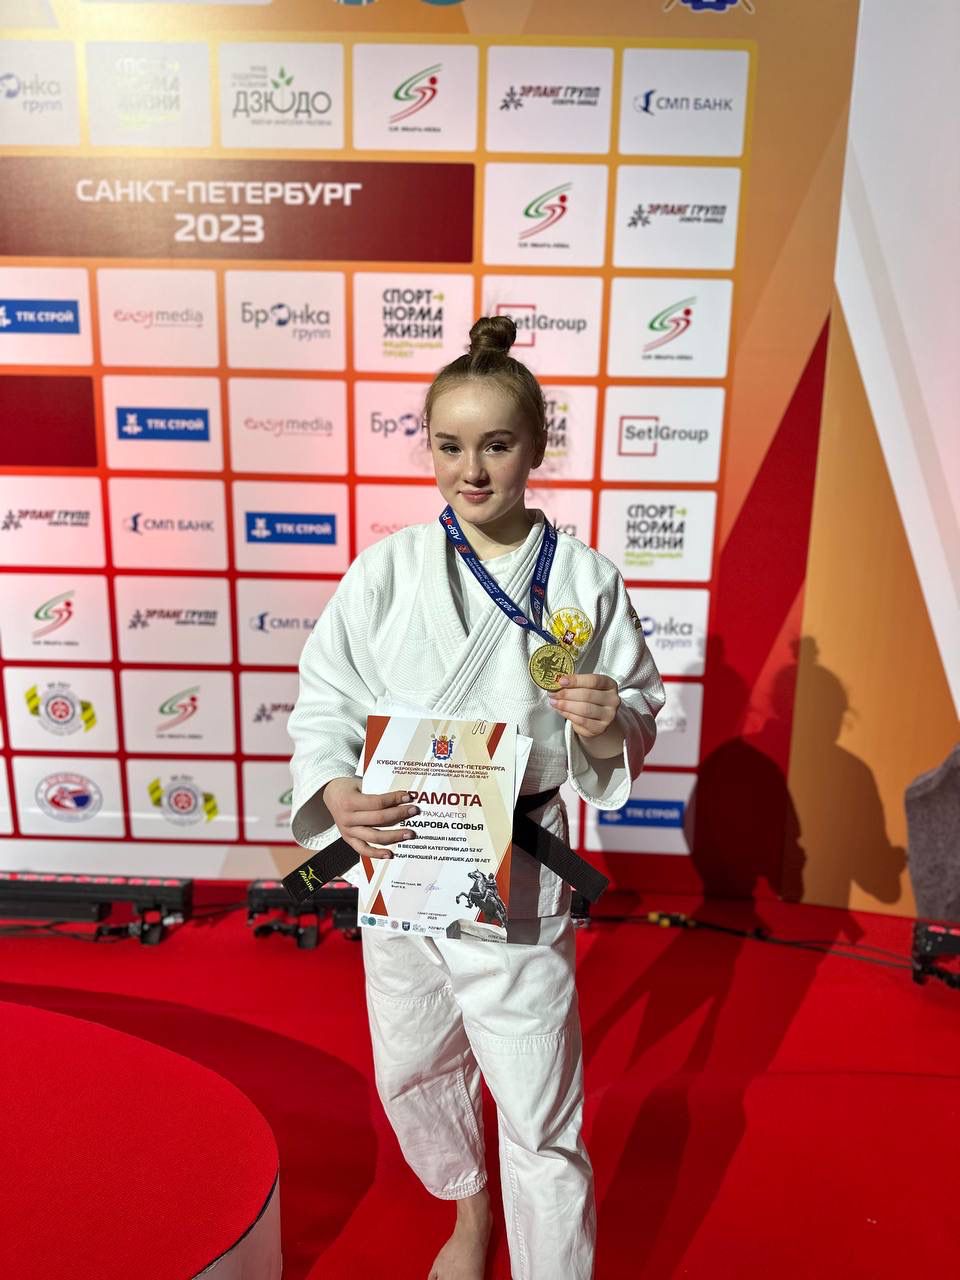 Поздравляем воспитанницу МБУ СШОР "Витязь"  Захарову Софью с золотой медалью Всероссийских соревнований по дзюдо!